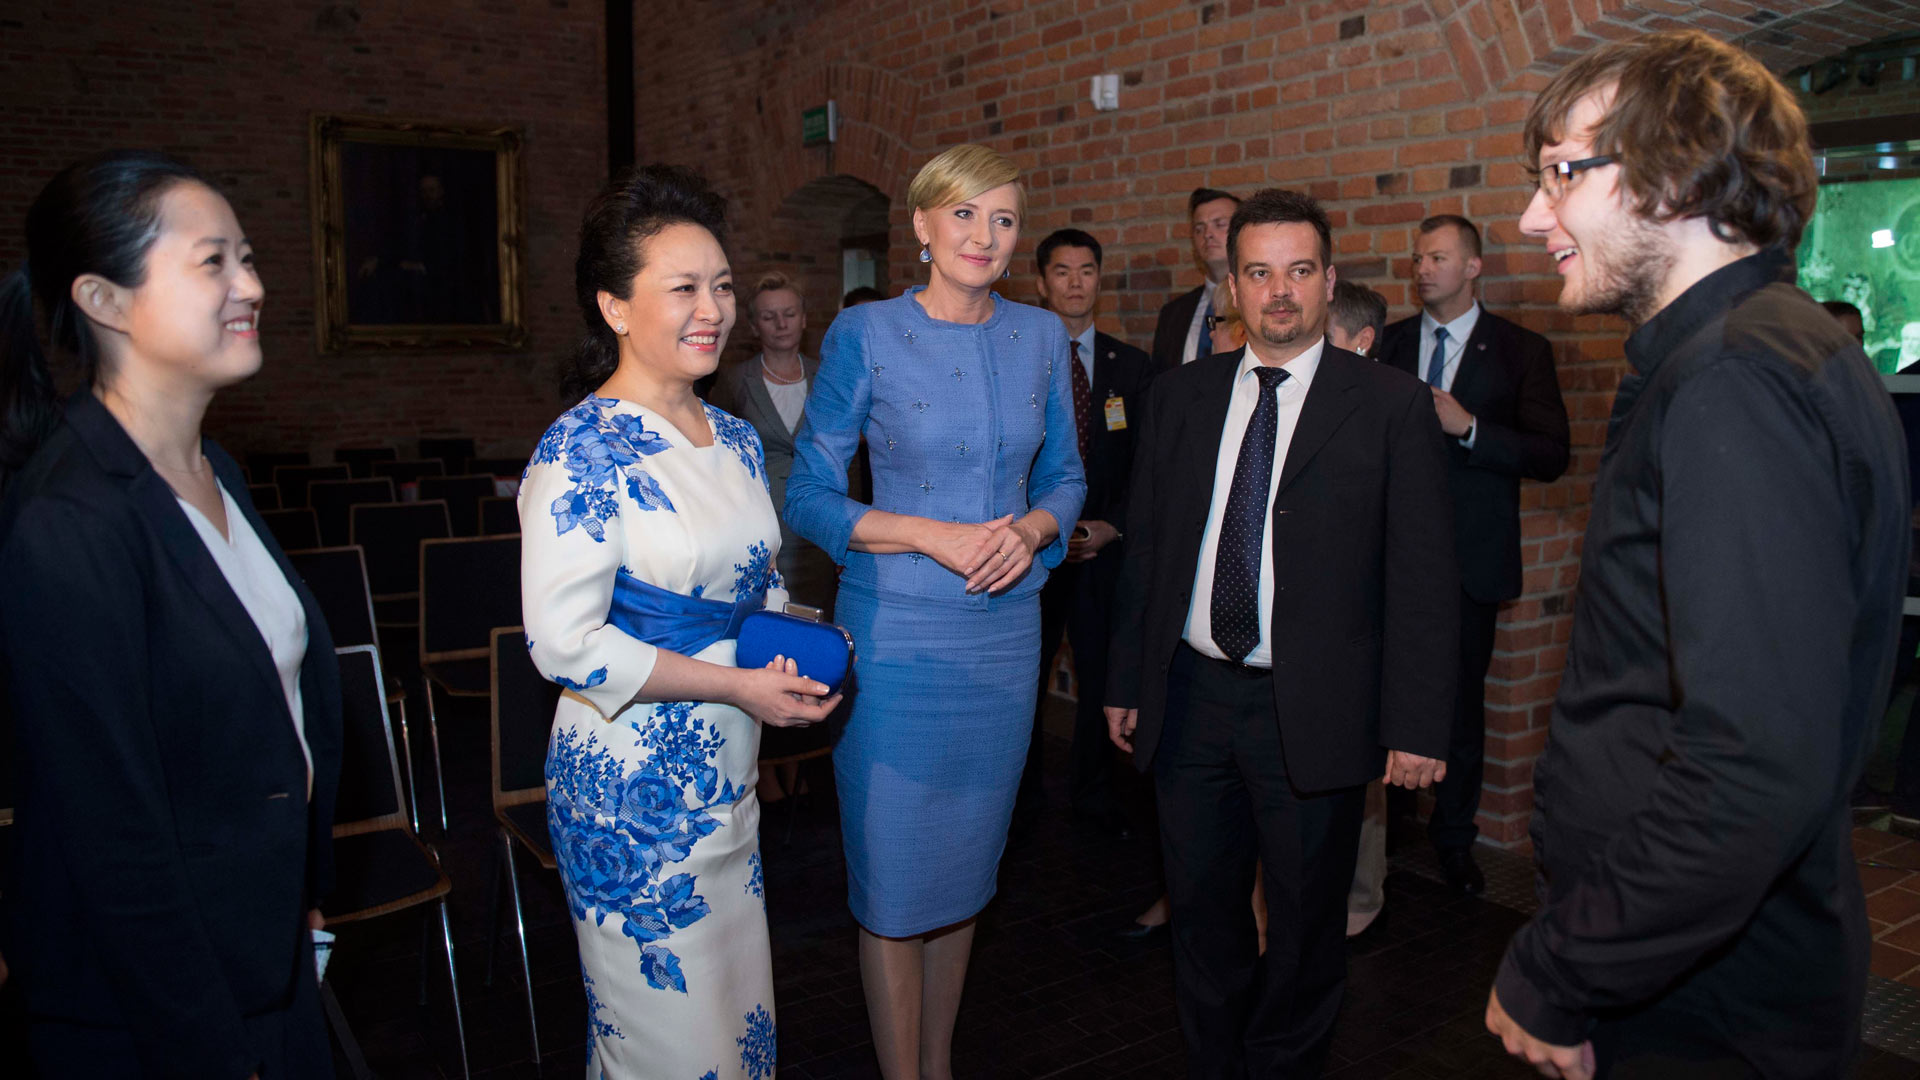 彭丽媛同波兰总统夫人阿加塔共同参观肖邦博物馆